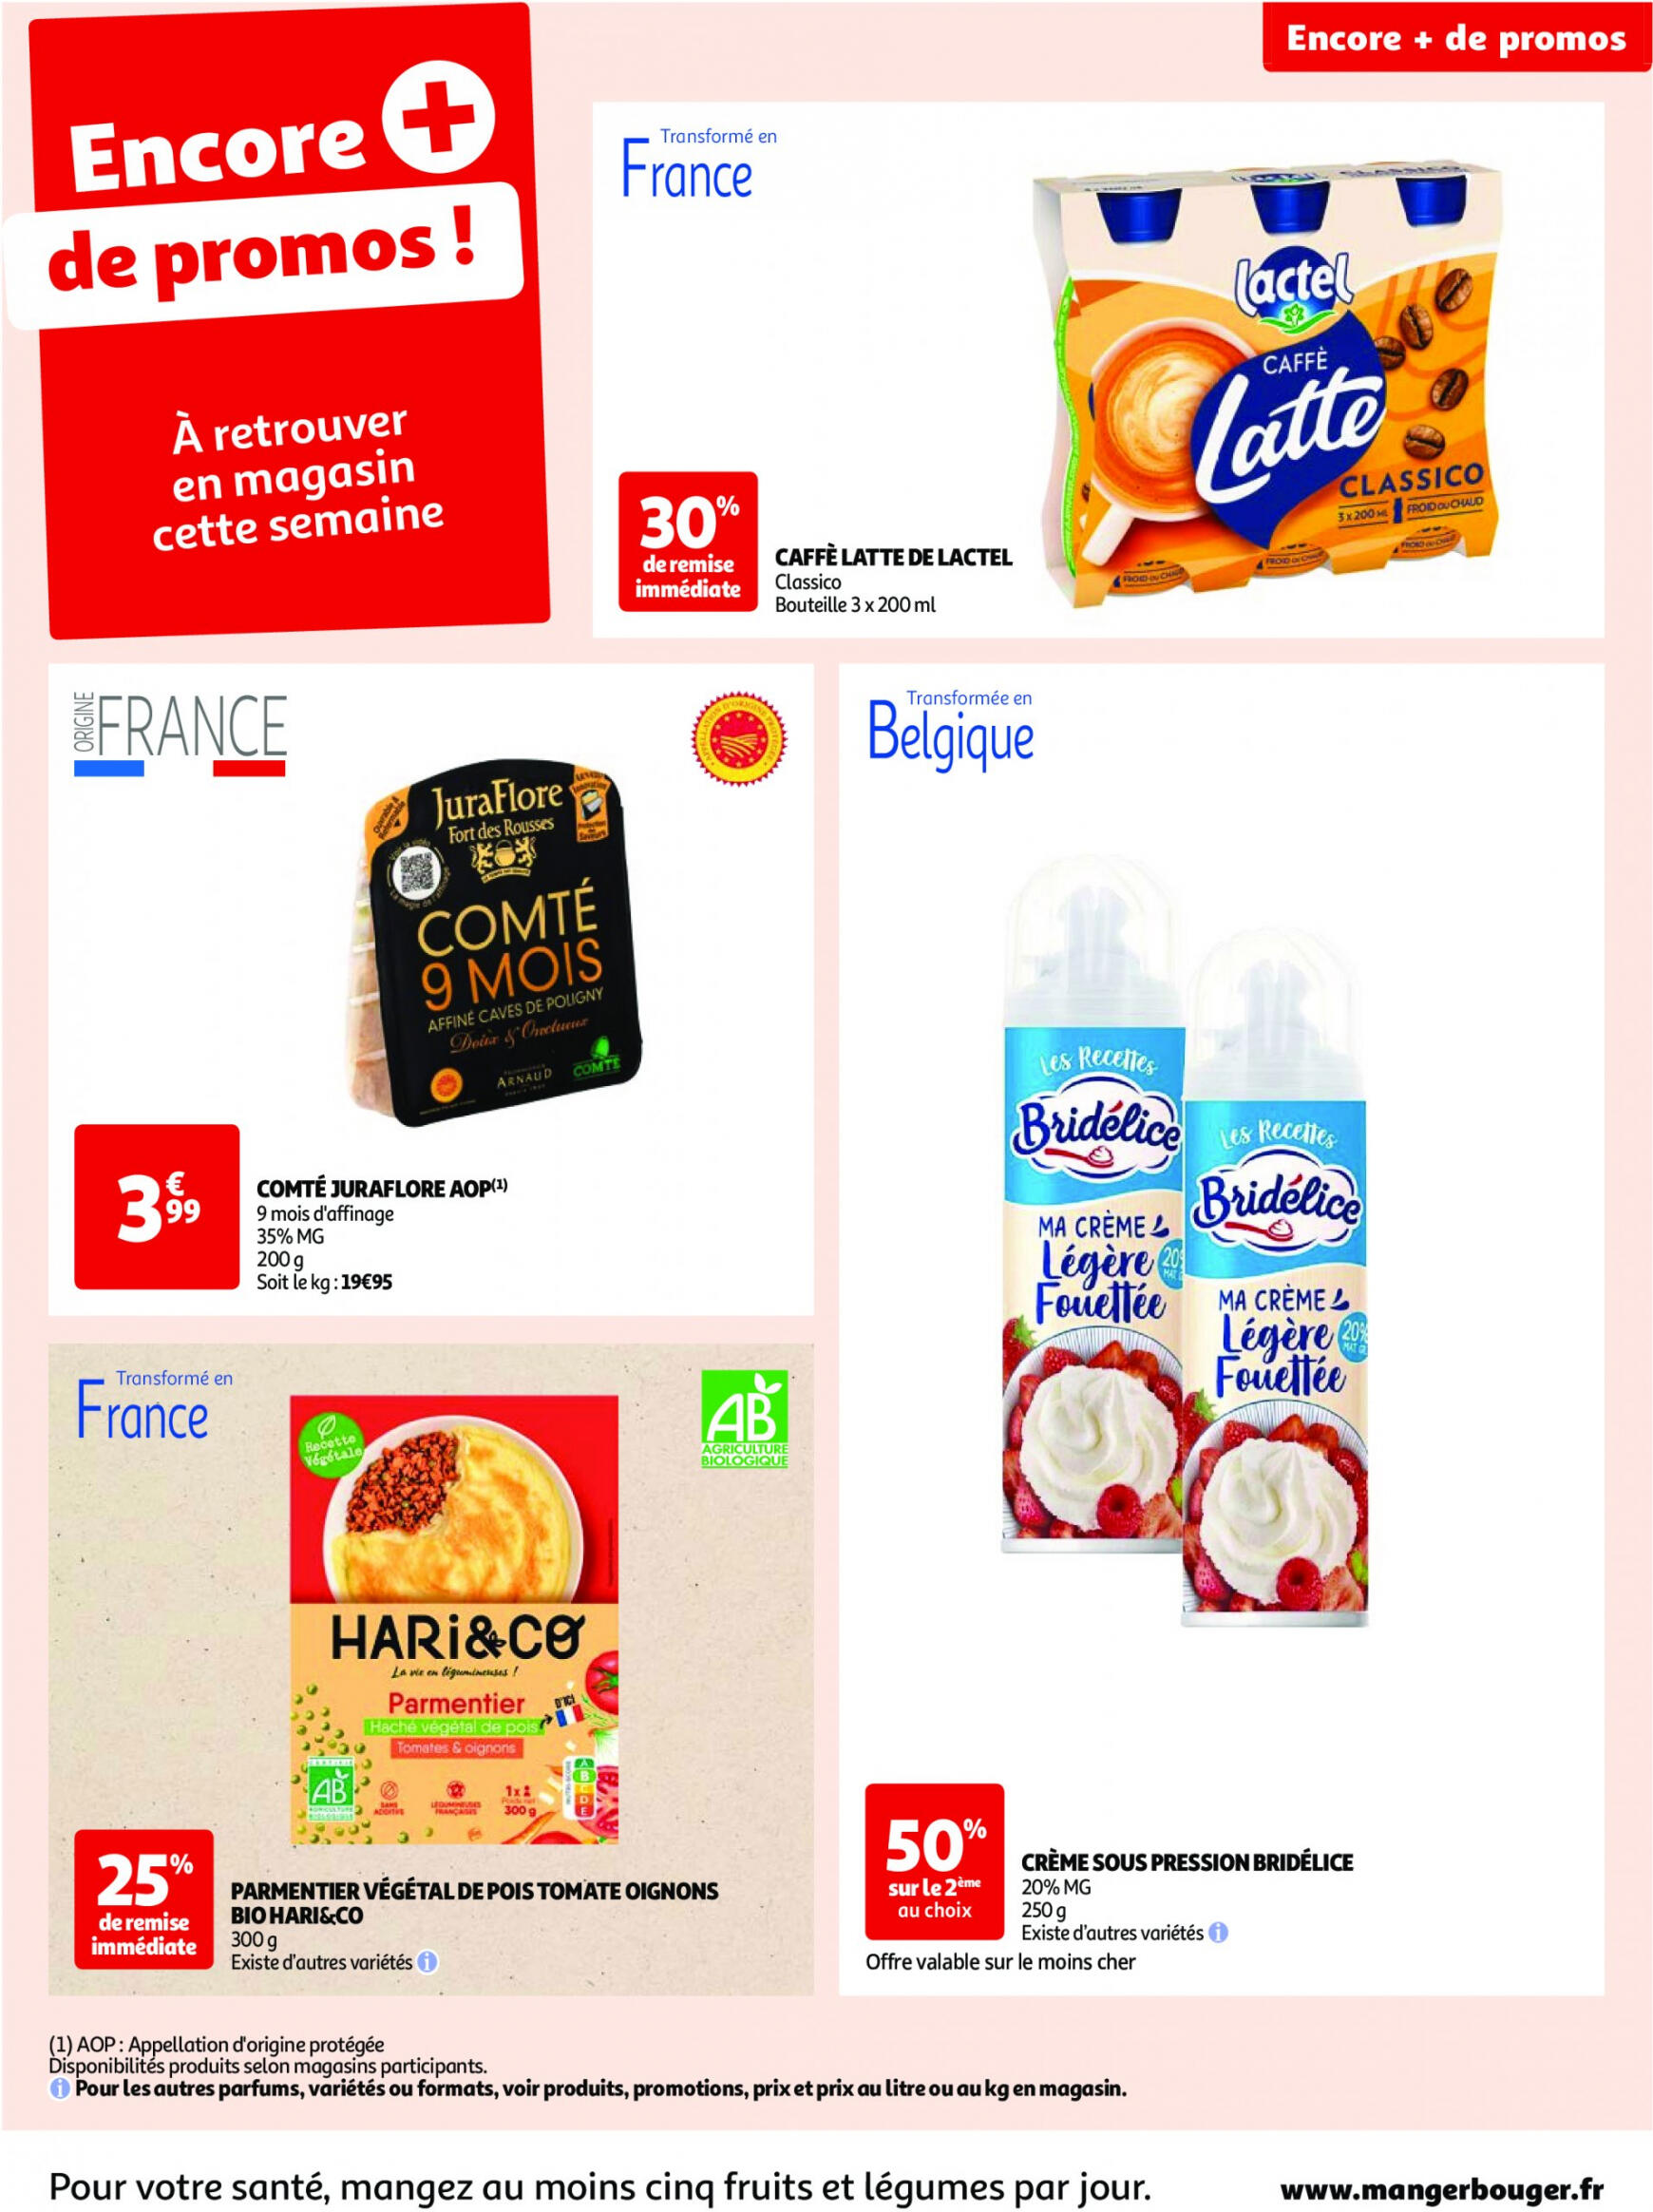 auchan - Prospectus Auchan actuel 14.05. - 21.05. - page: 54